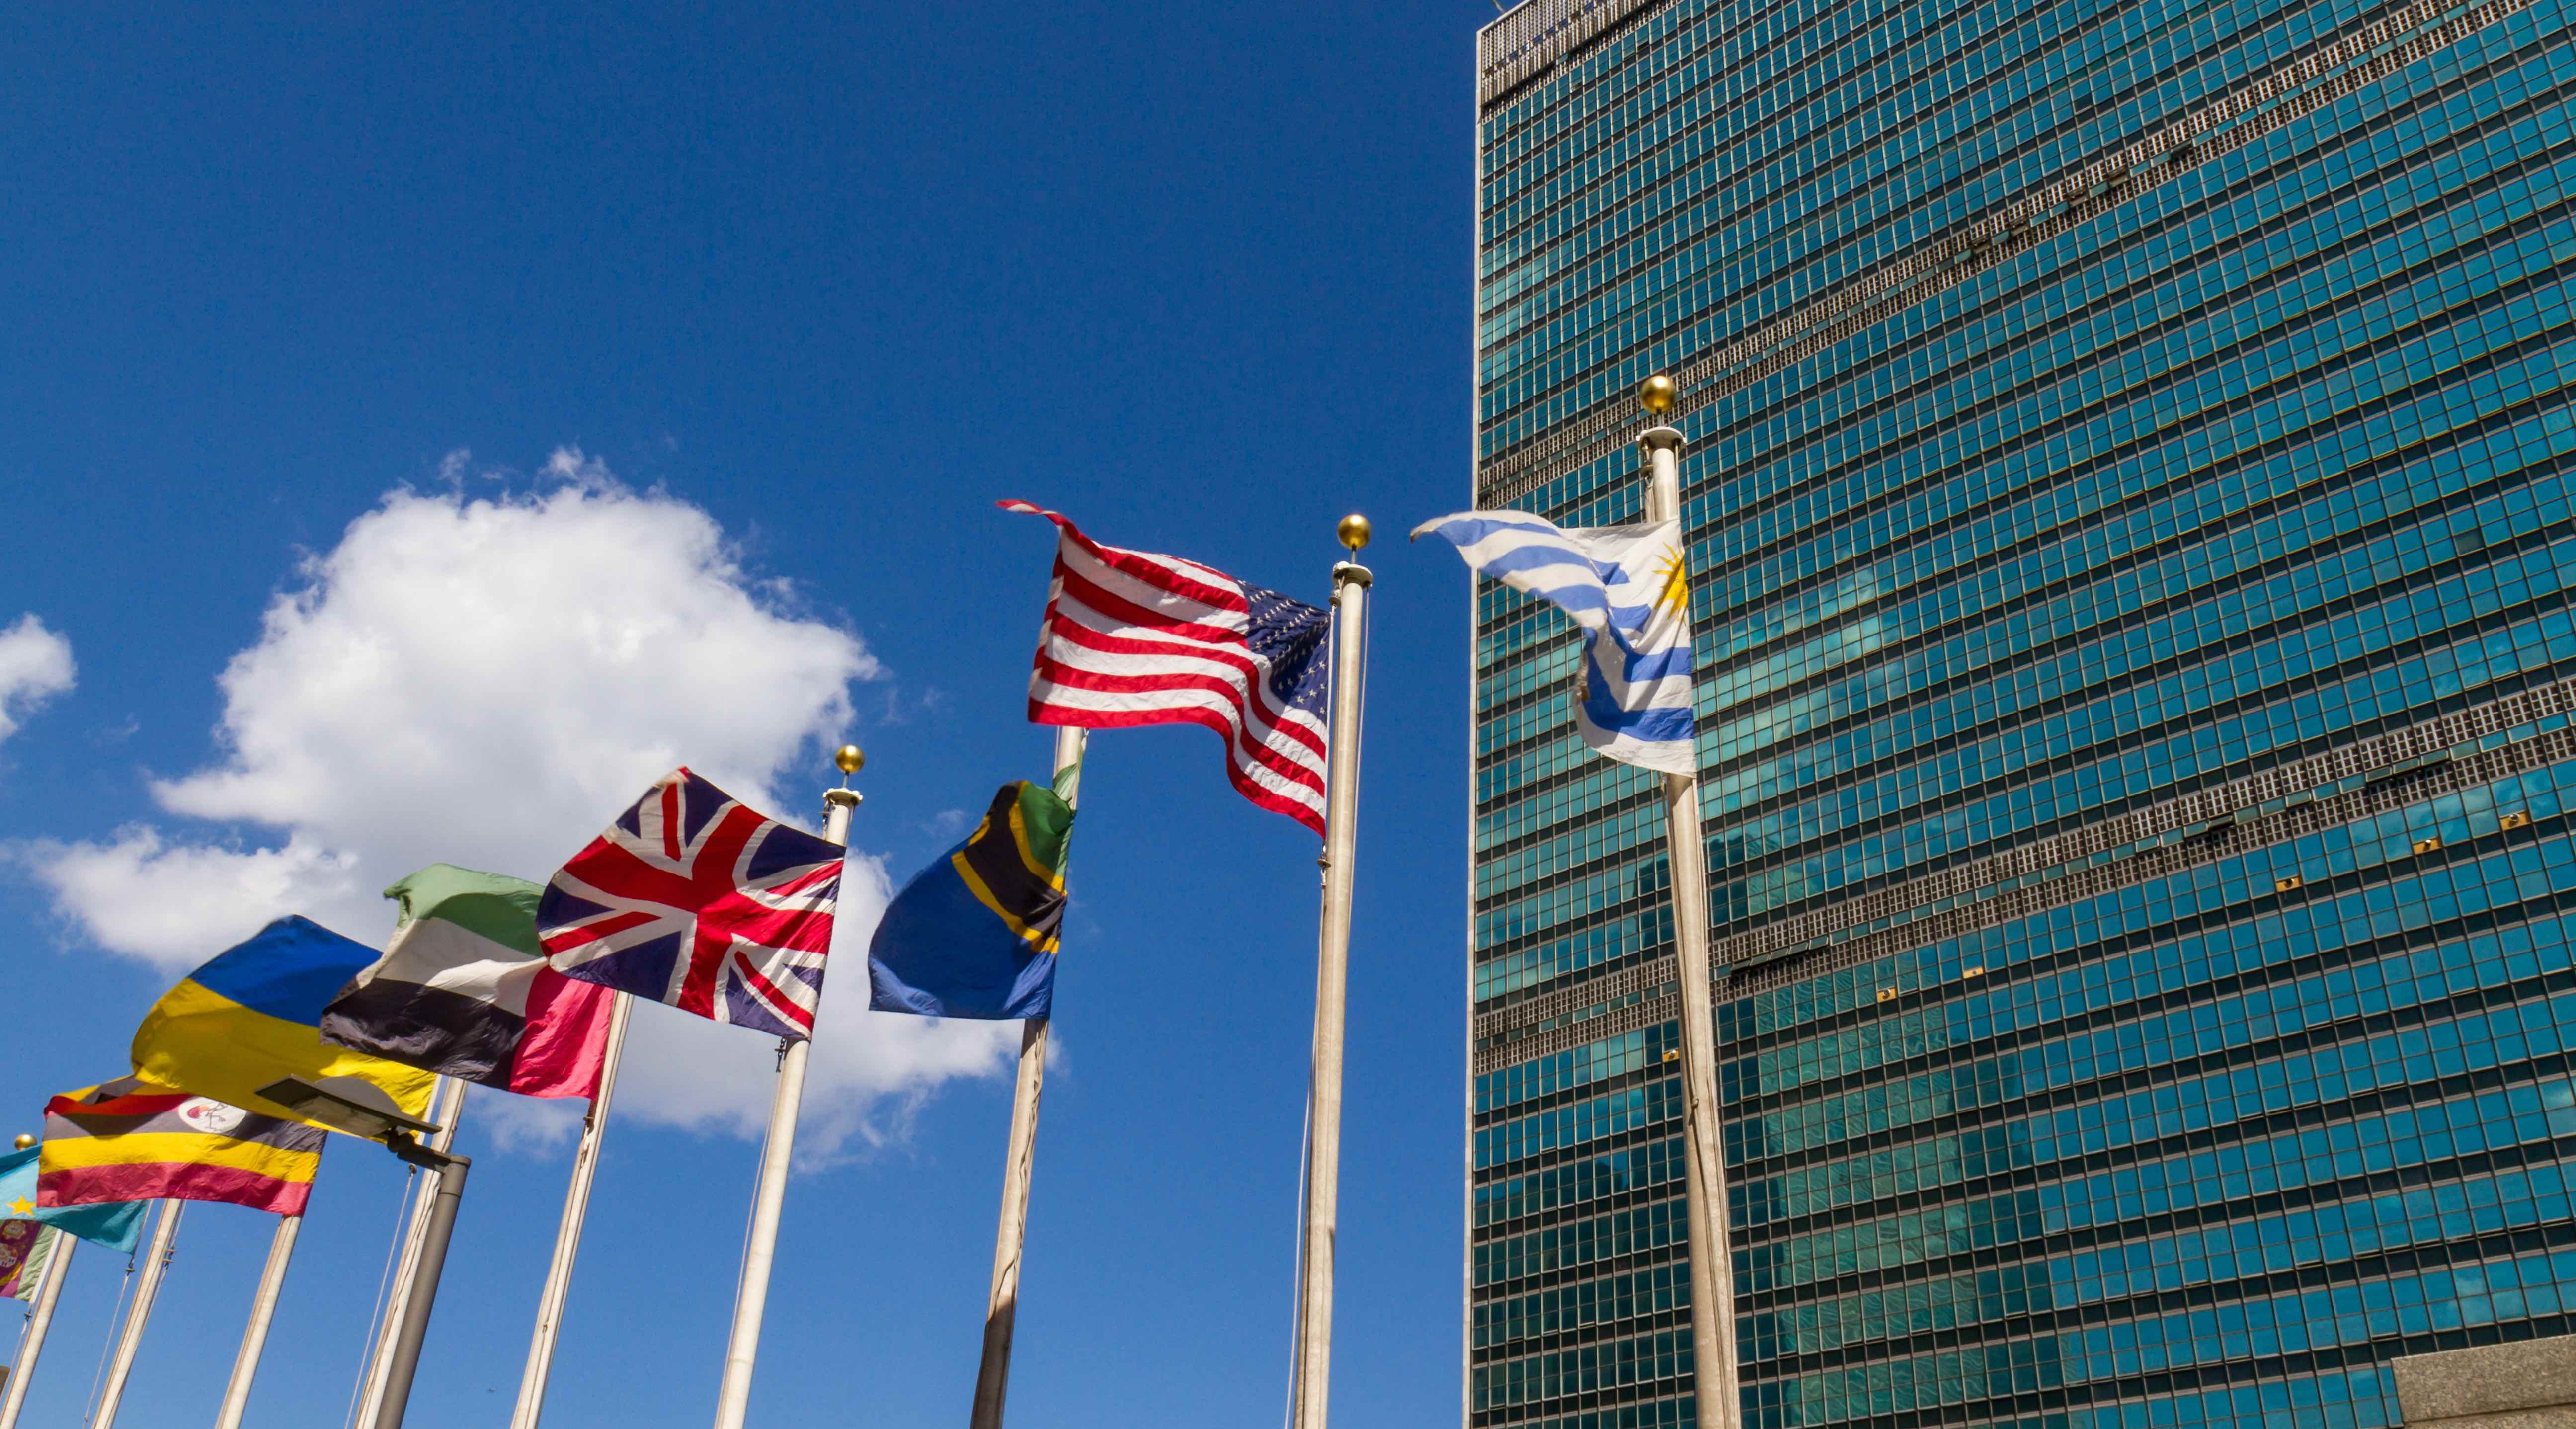 الأمانة العامة للأمم المتحدة تشيد بالمبادرات الرقمية التي أطلقتها الإمارات لمواجهة كورونا